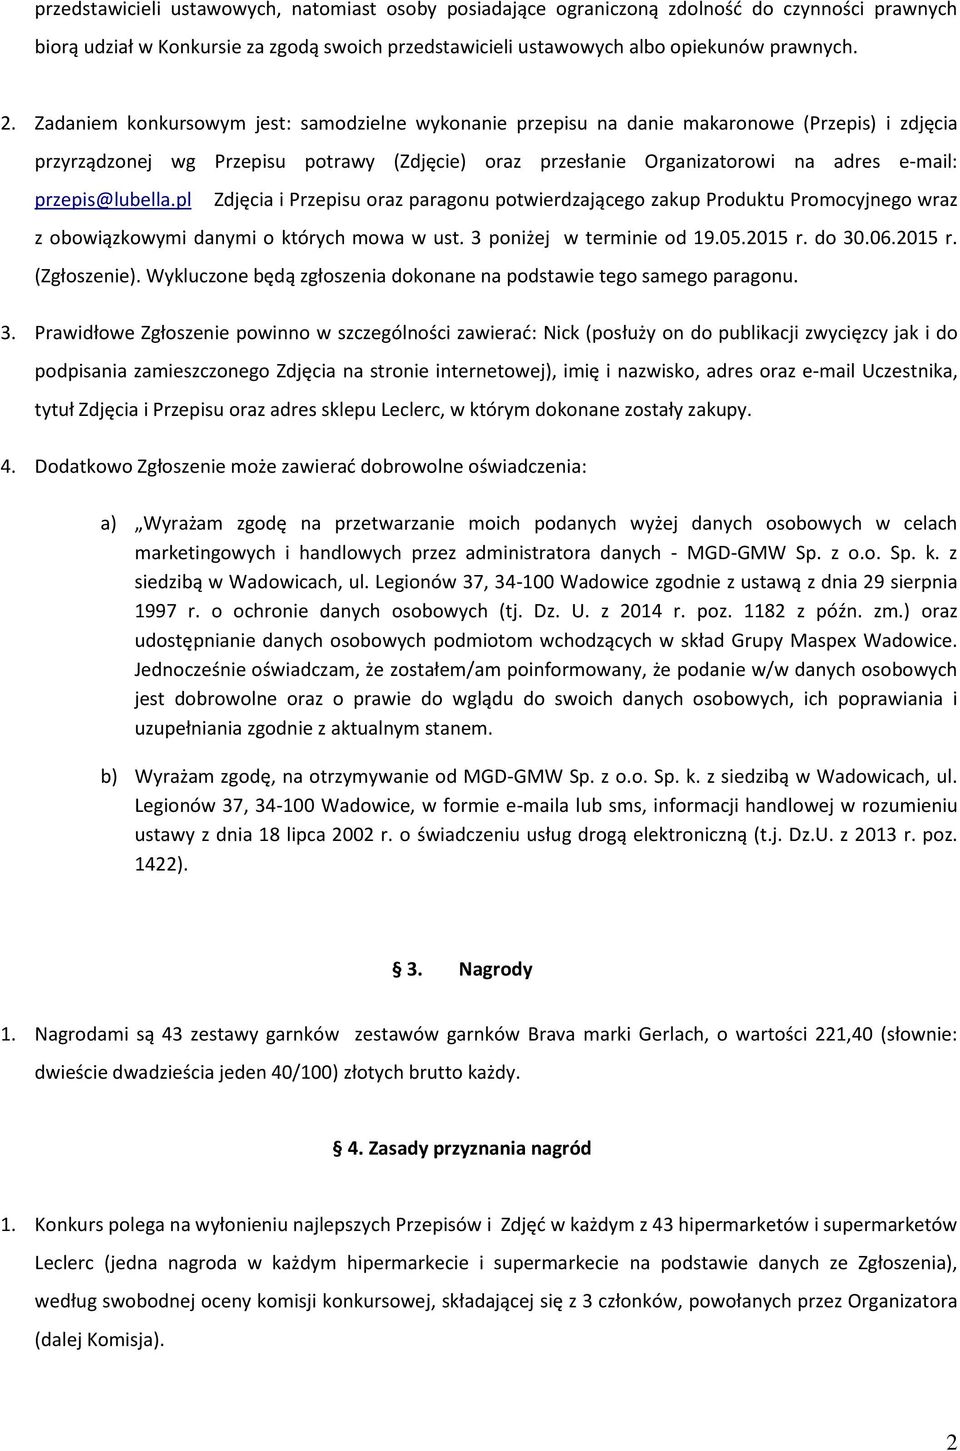 przepis@lubella.pl Zdjęcia i Przepisu oraz paragonu potwierdzającego zakup Produktu Promocyjnego wraz z obowiązkowymi danymi o których mowa w ust. 3 poniżej w terminie od 19.05.2015 r. do 30.06.